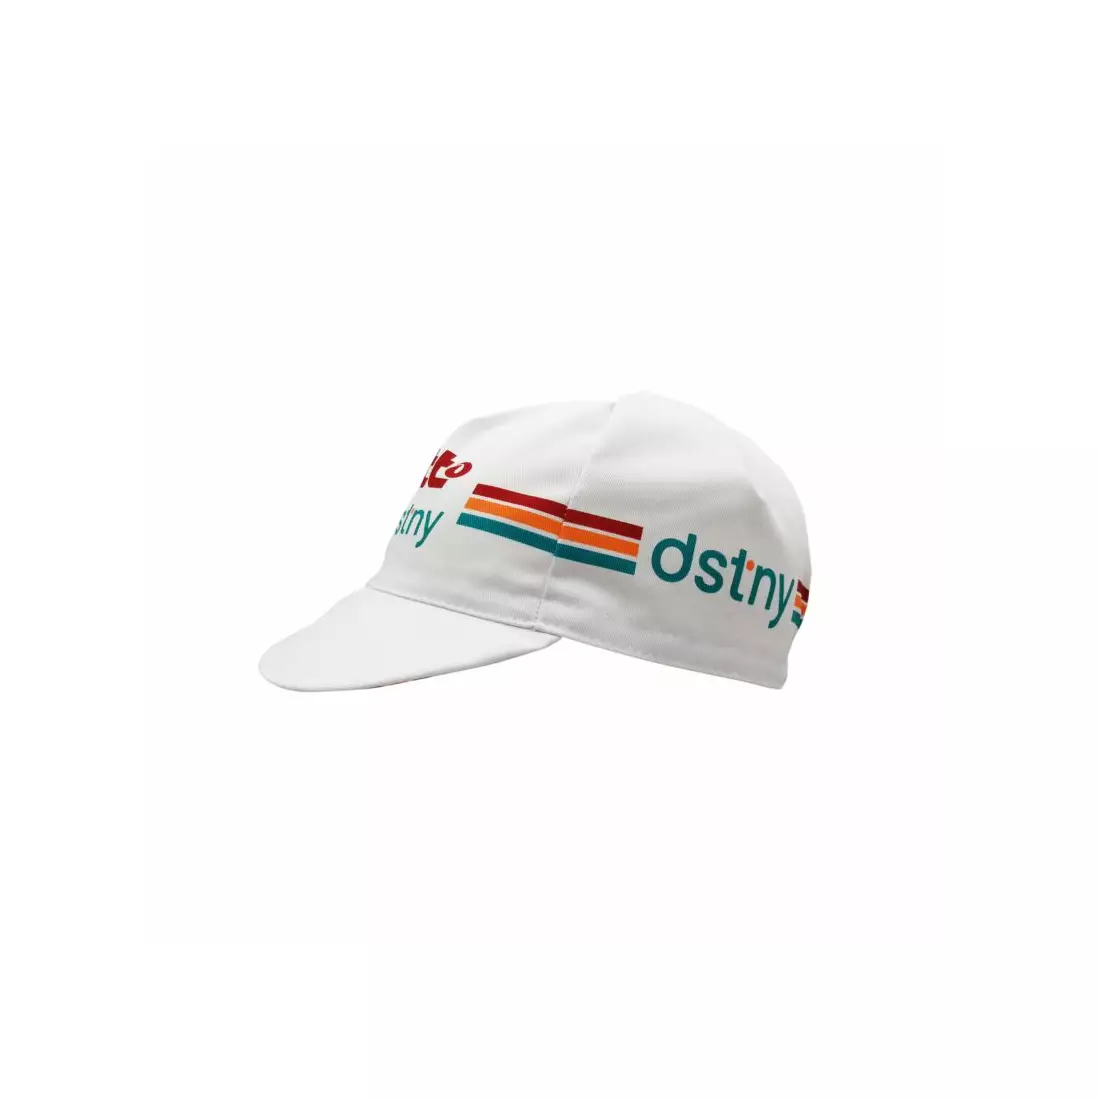 APIS PROFI LOTTO DST*NY cycling cap with visor